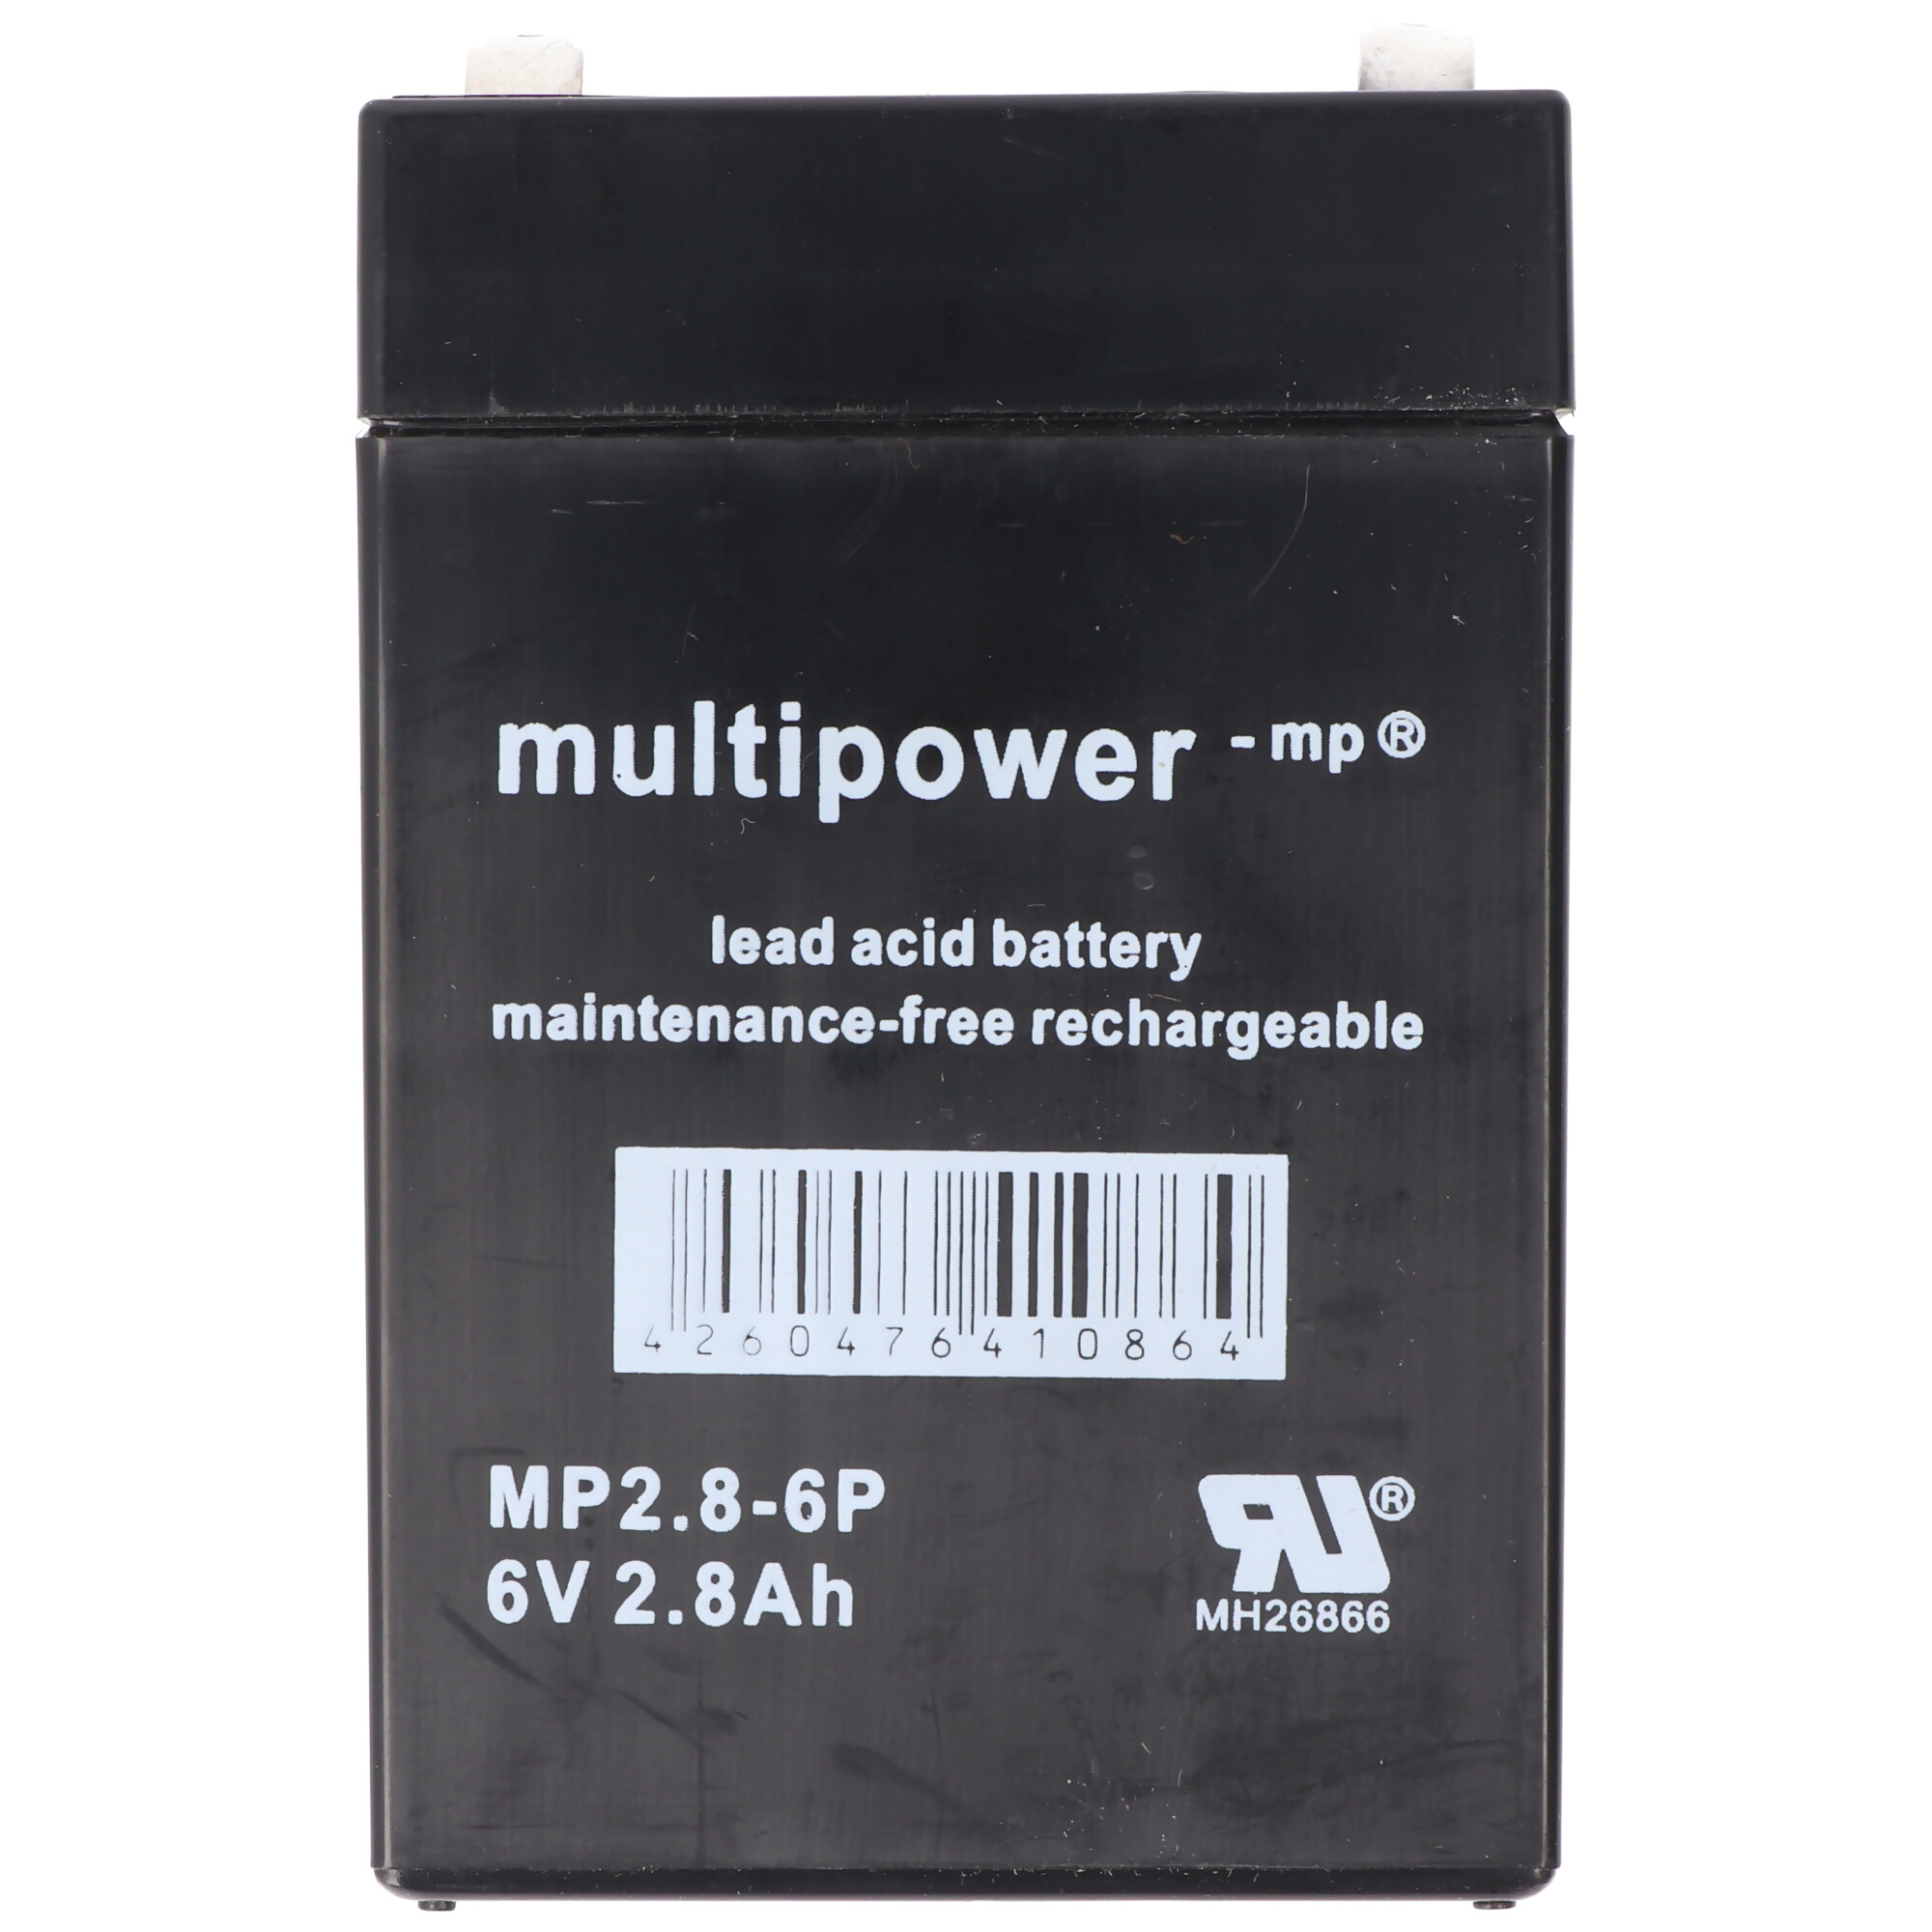 Multipower MP2.8-6 Akku PB Blei, 6V 2800mAh, Anschluss 4,8mm, MP2.8-6P